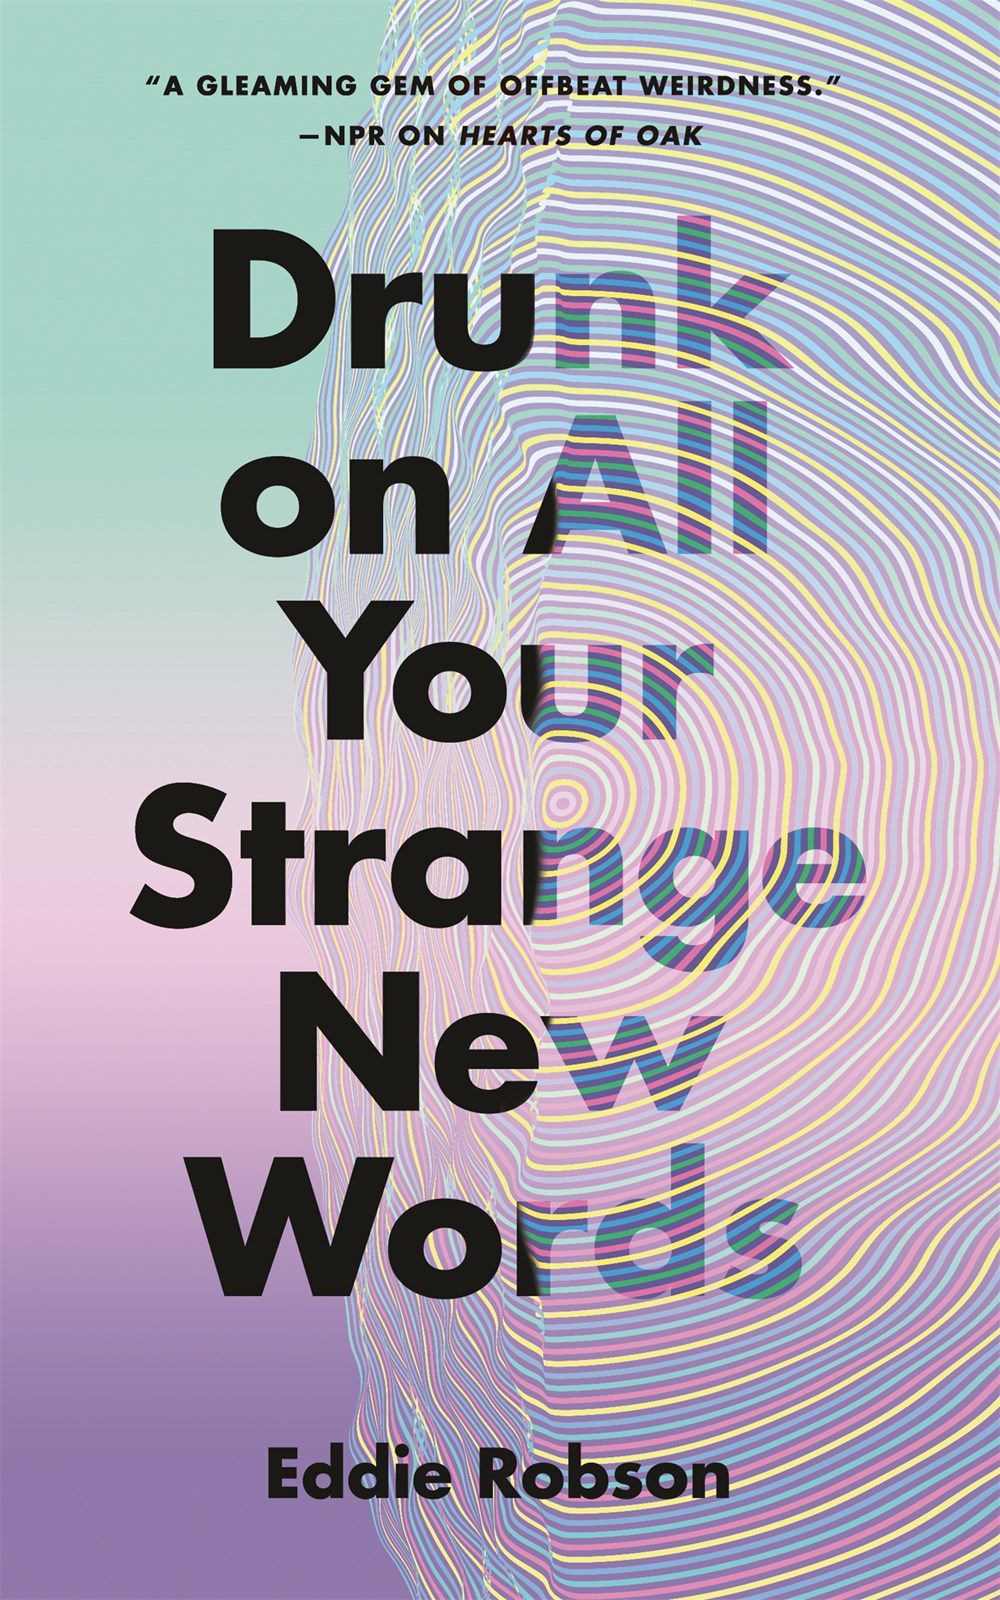 Copertina di Drunk on All Your Strange New Worlds di Eddie Robson, con testo scuro su uno sfondo pastello parzialmente oscurato da un effetto increspatura.